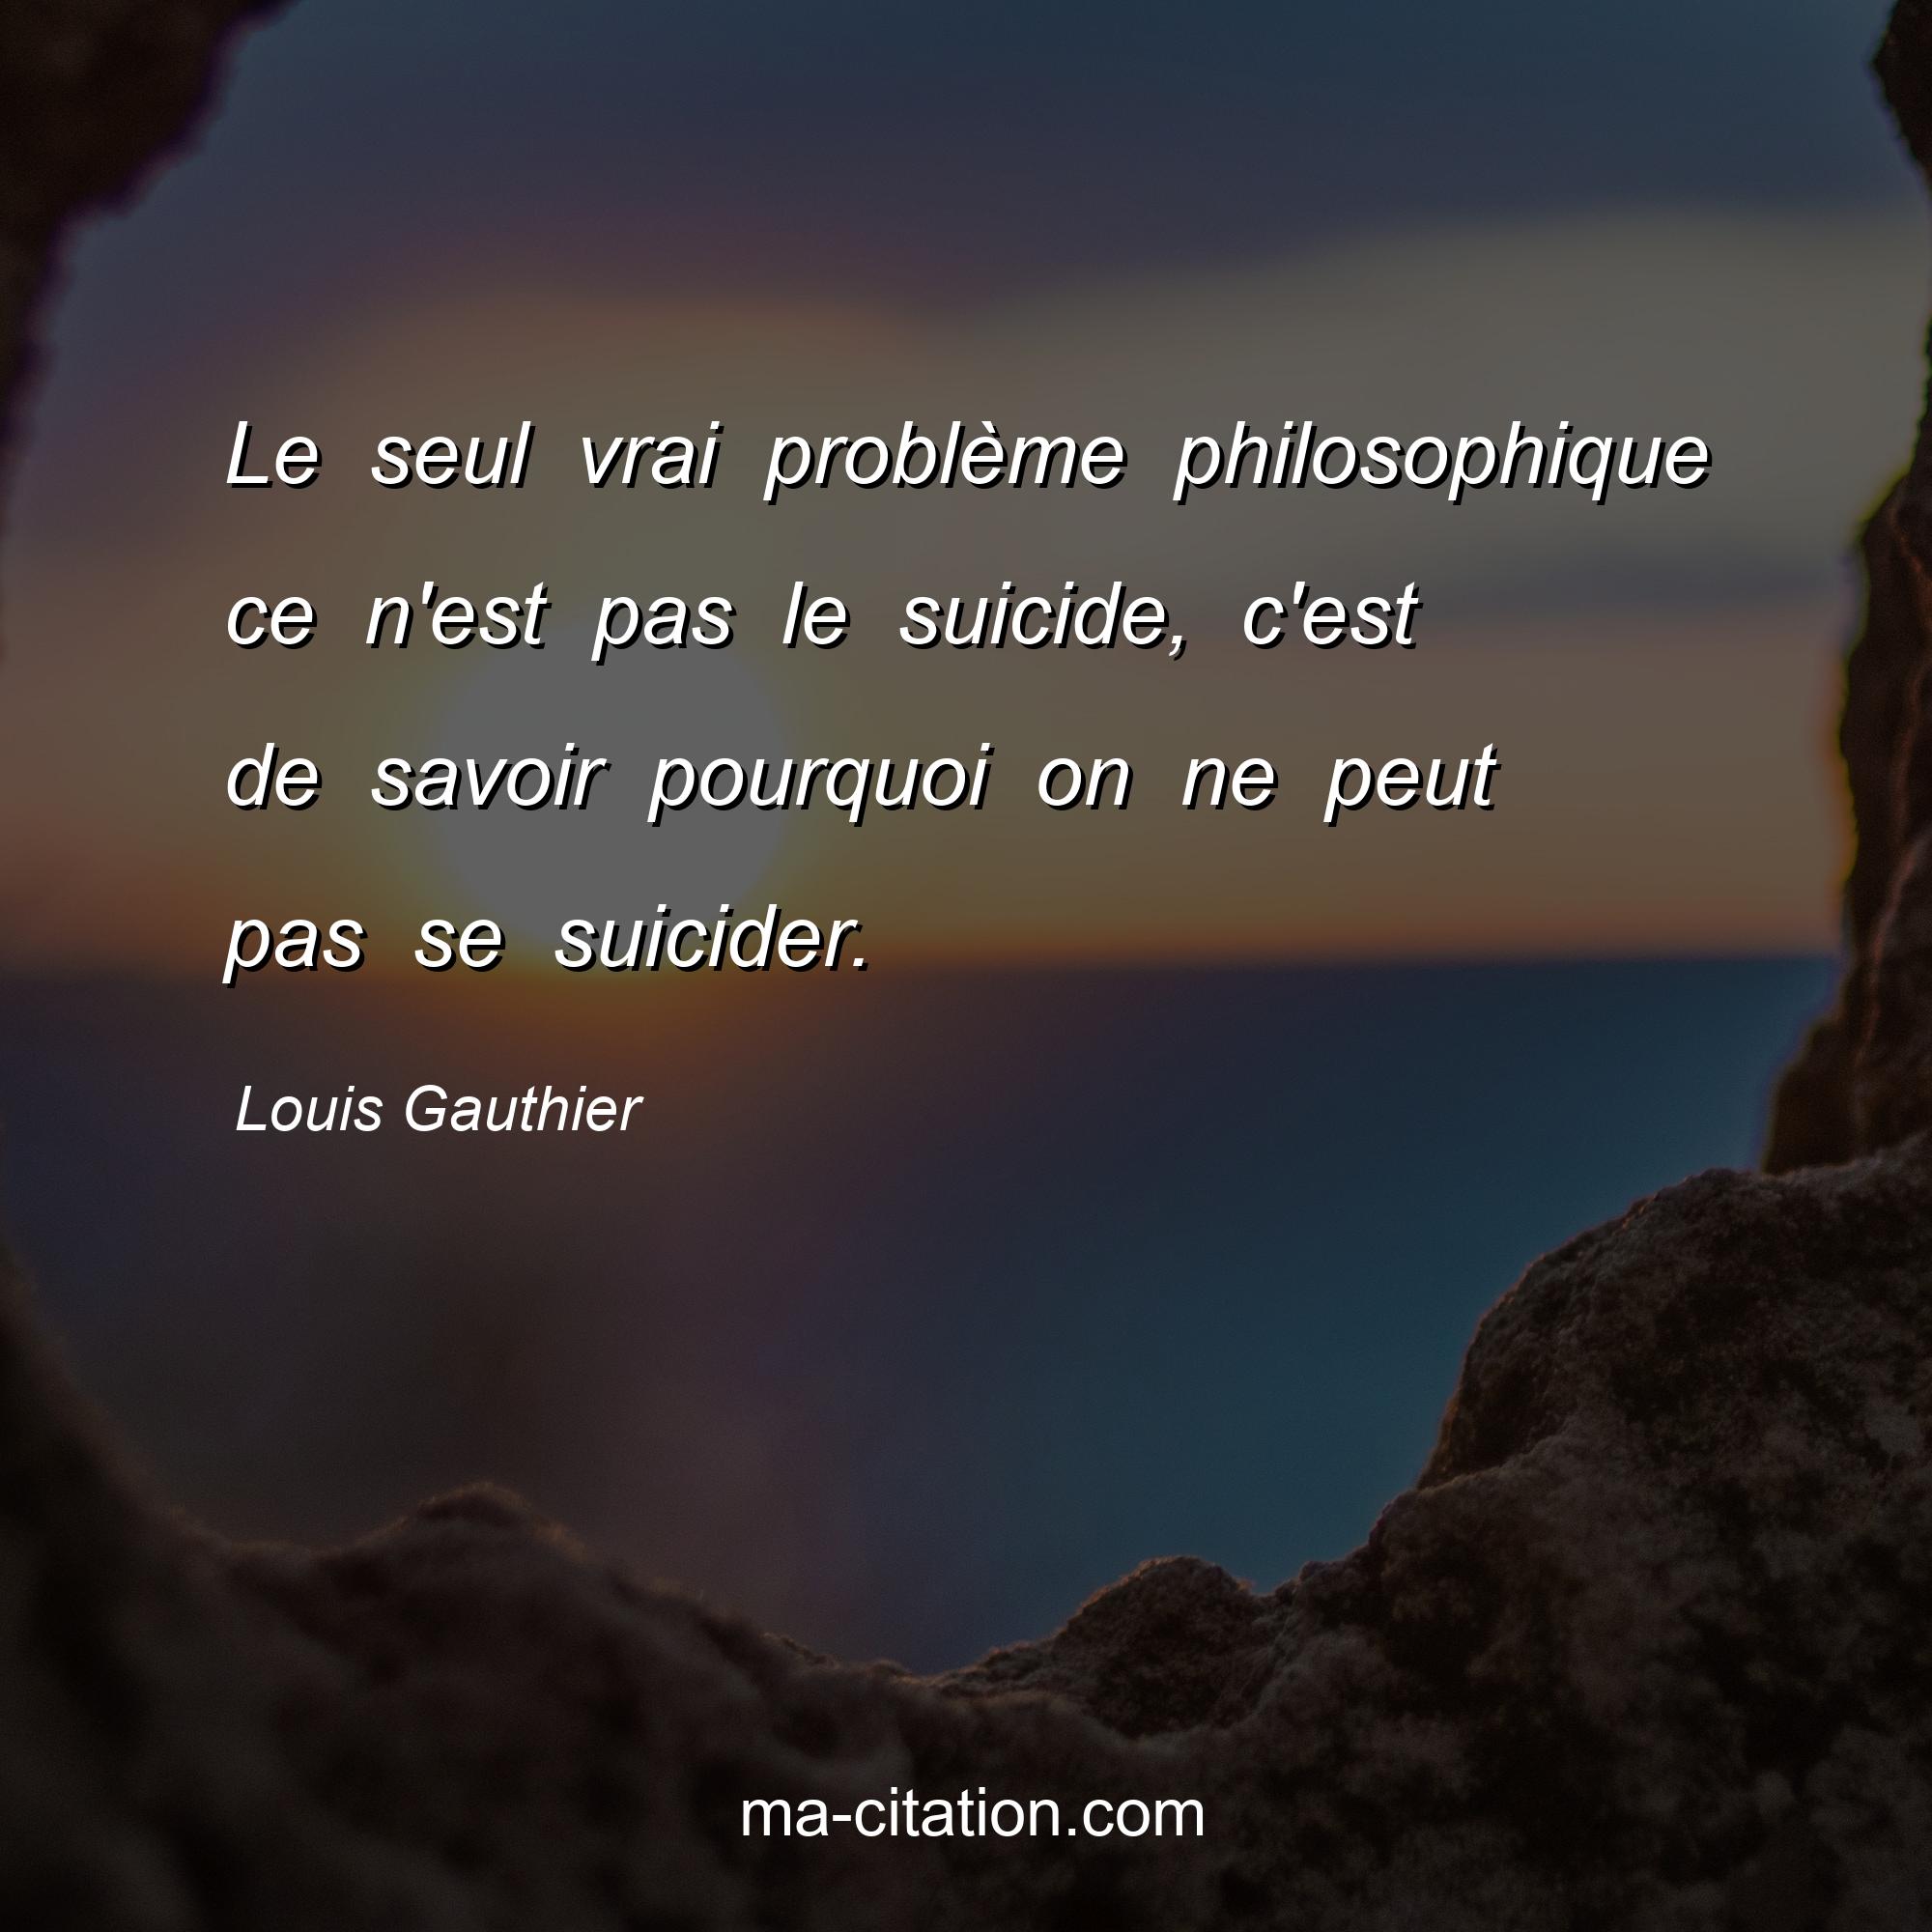 Louis Gauthier : Le seul vrai problème philosophique ce n'est pas le suicide, c'est de savoir pourquoi on ne peut pas se suicider.